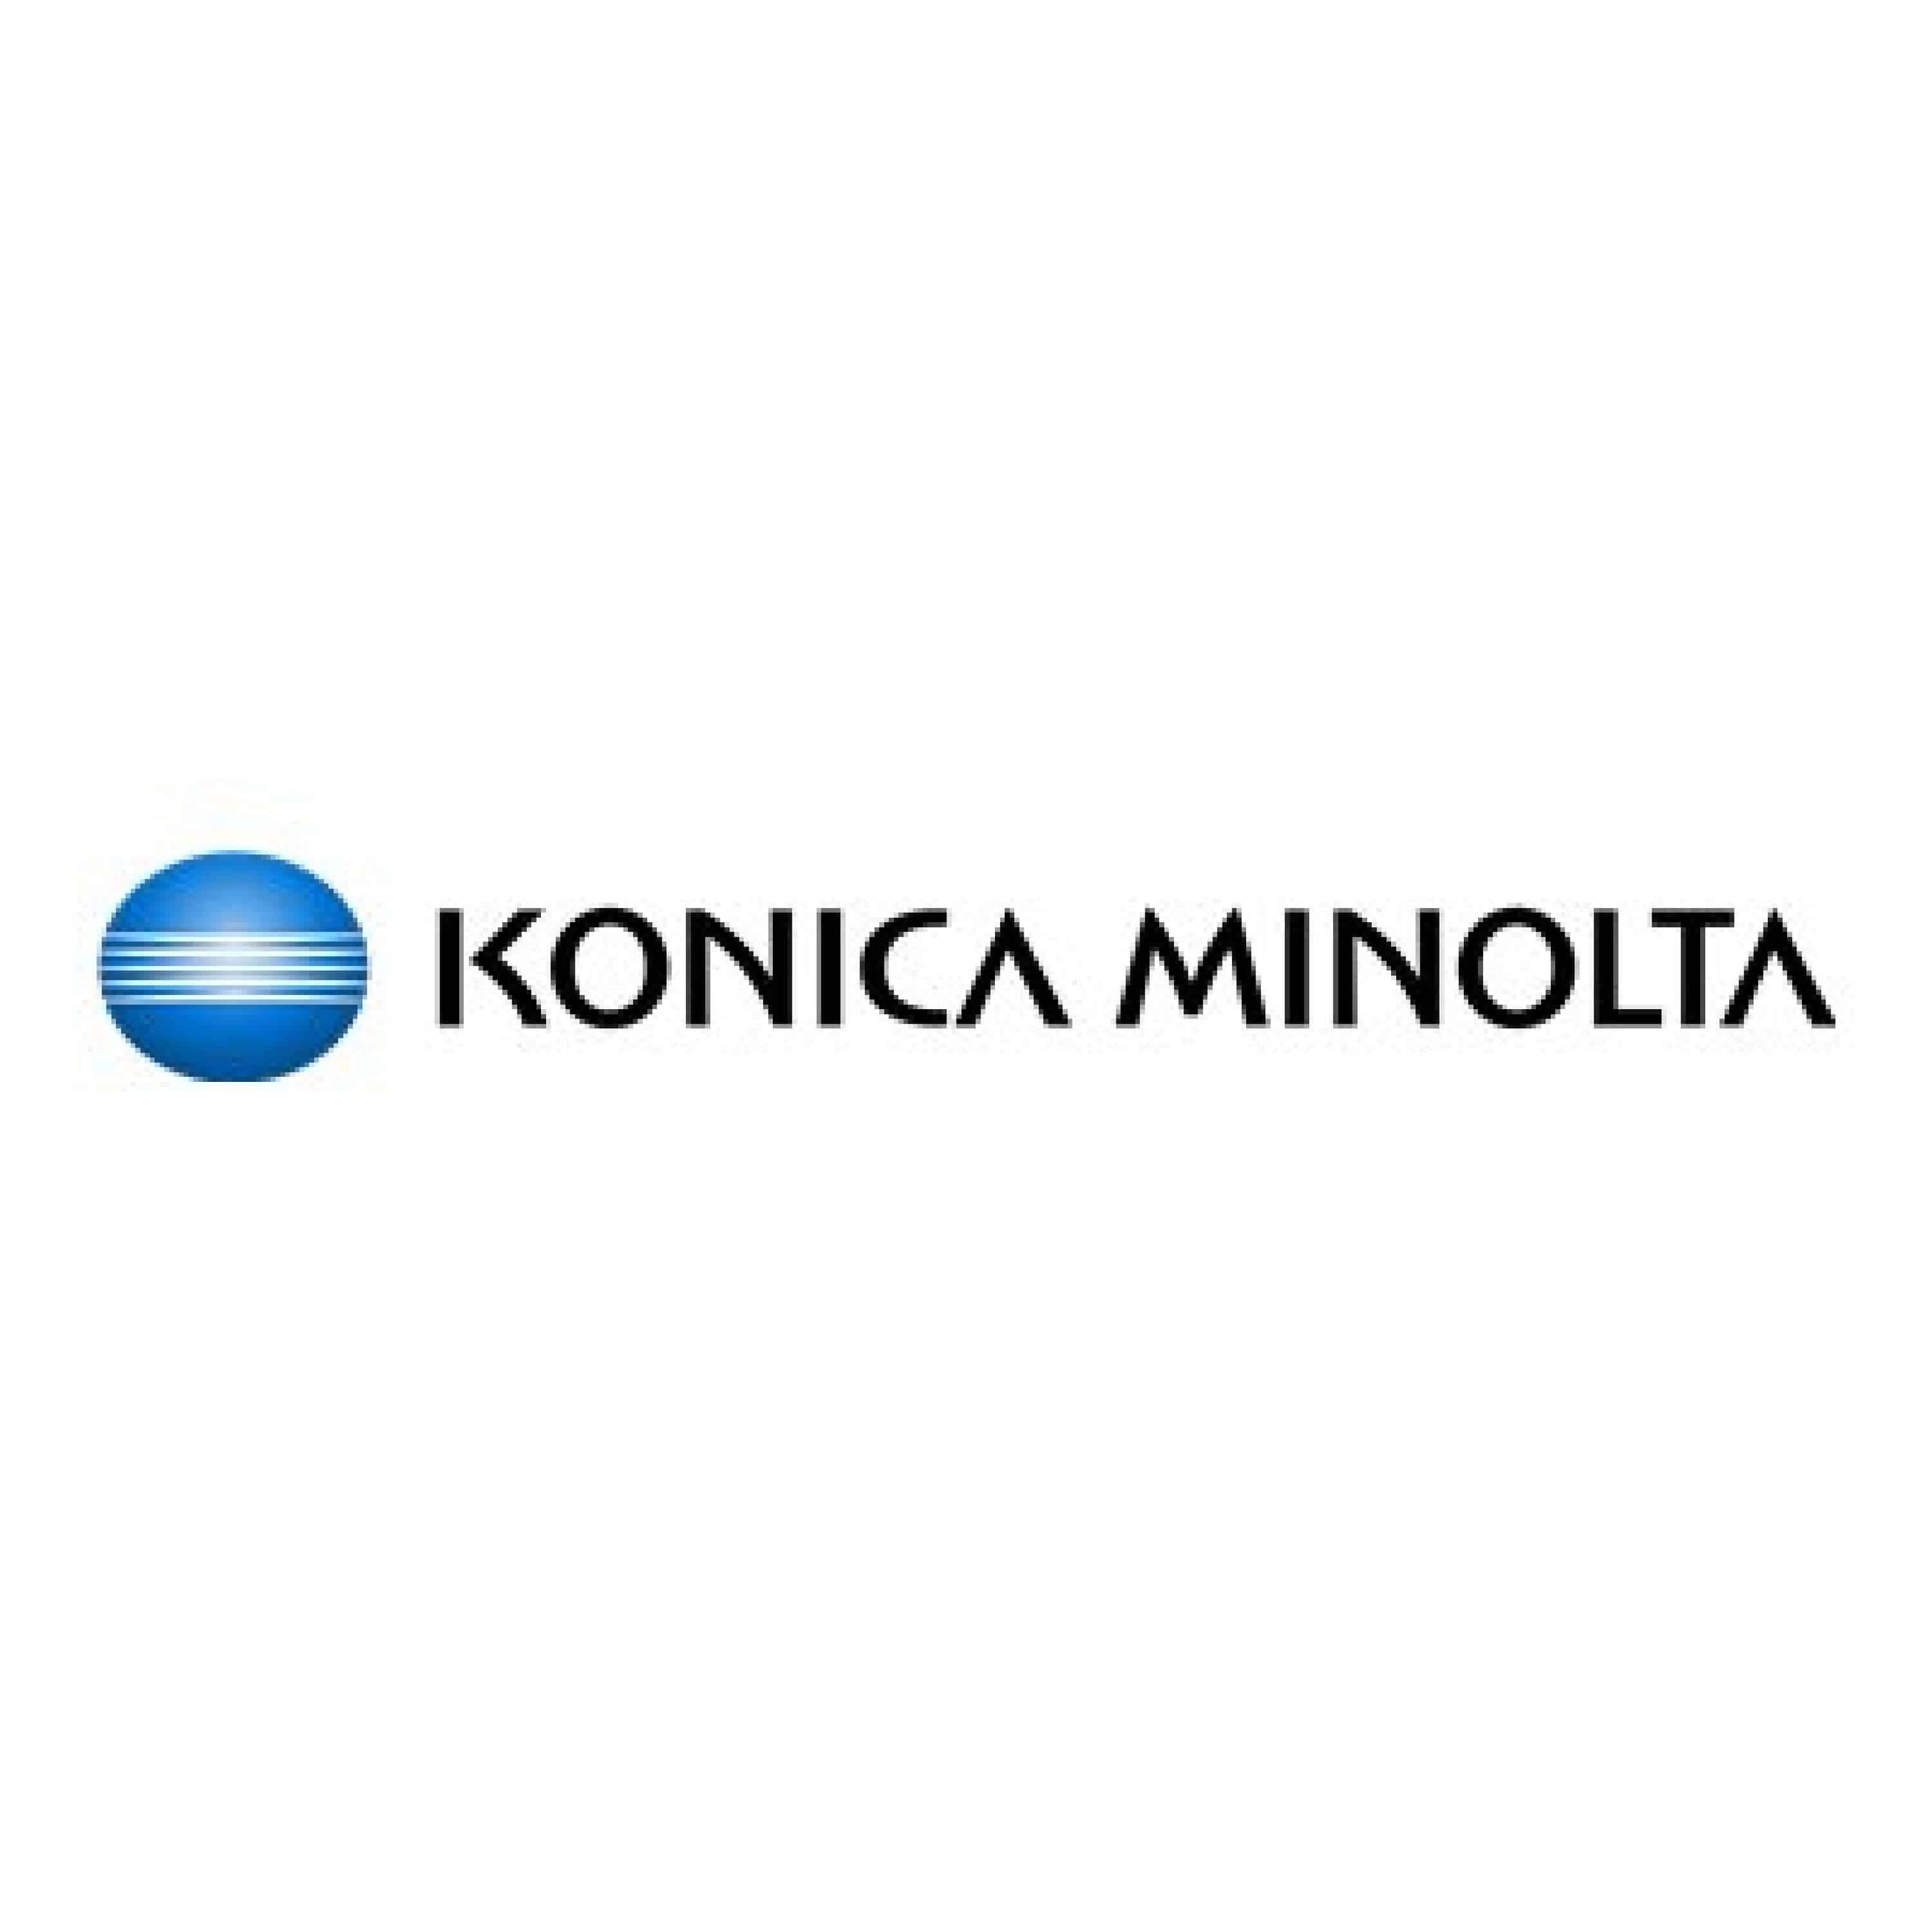 Original Toner Konica Minolta A3VX350 / TN-619M Magenta